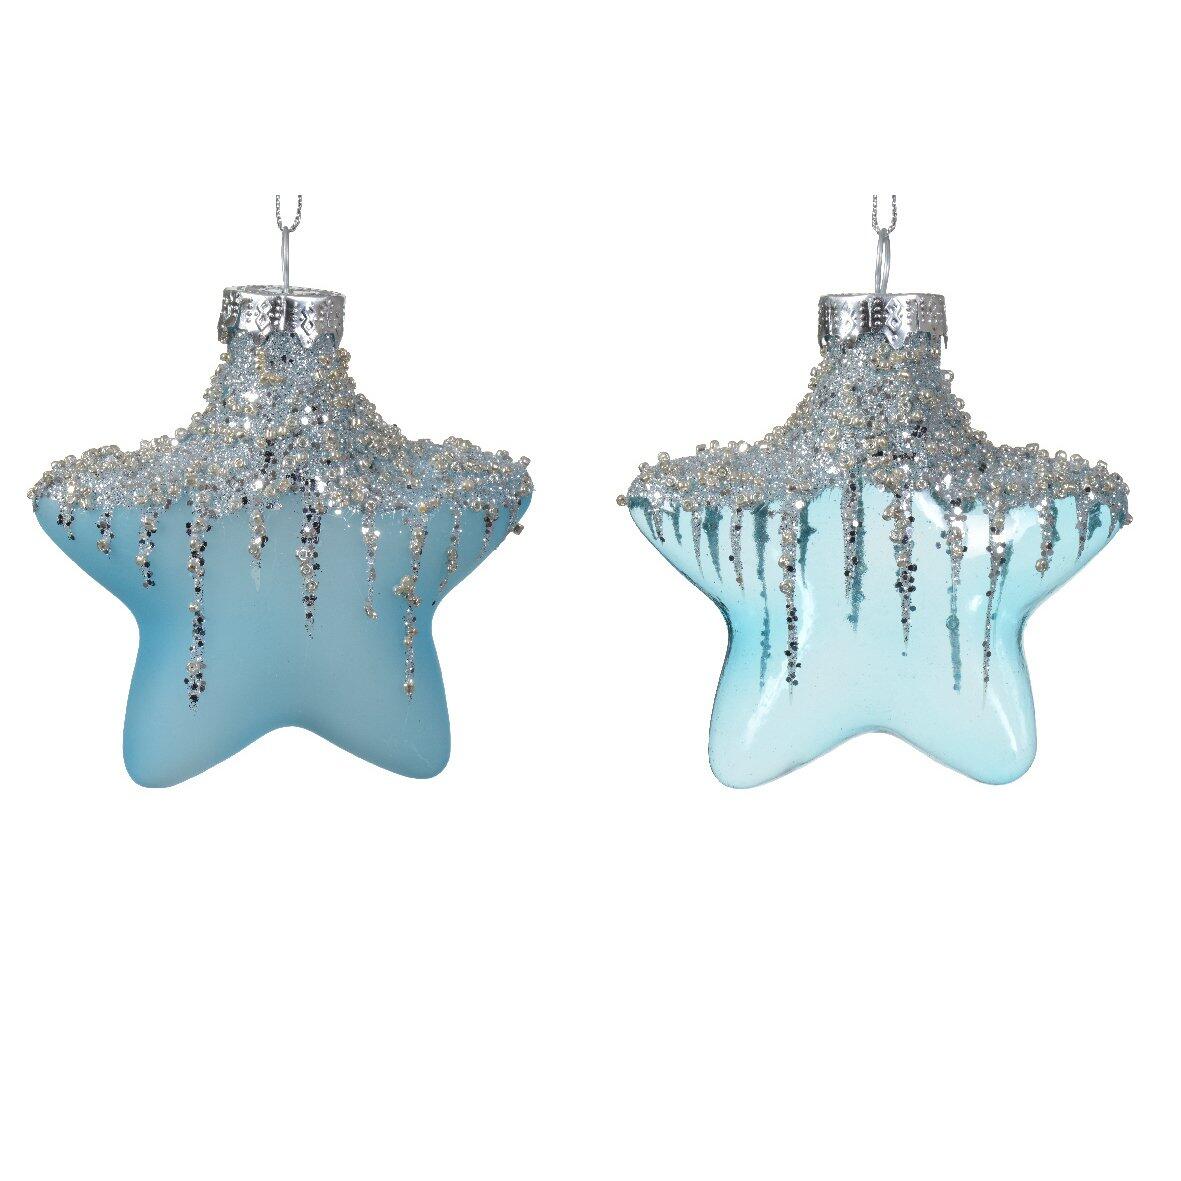 Lote de 2 estrellas de Navidad en vidrio Arctique Azul destello 1